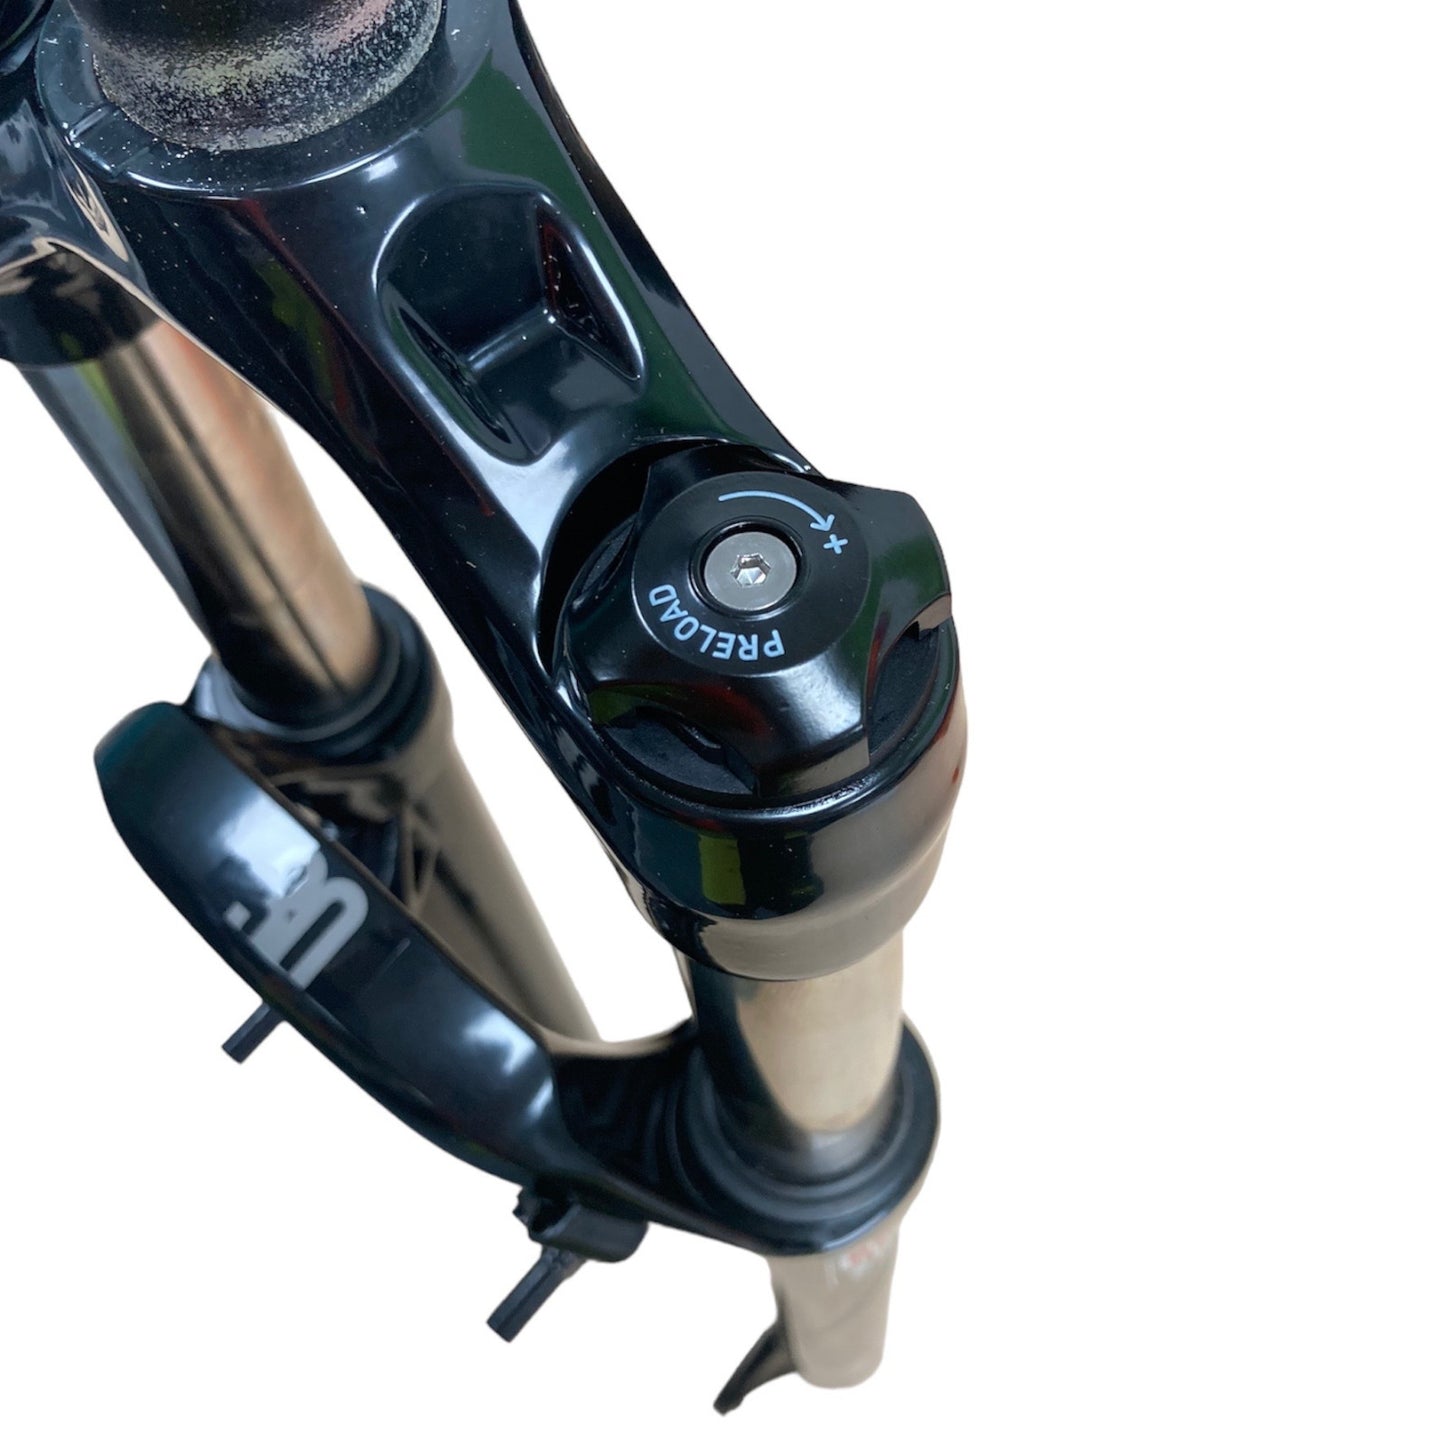 Fourche à suspension pour vélo VTT Rockshox 30 Silver TK 100 mm 1 1/8 26"